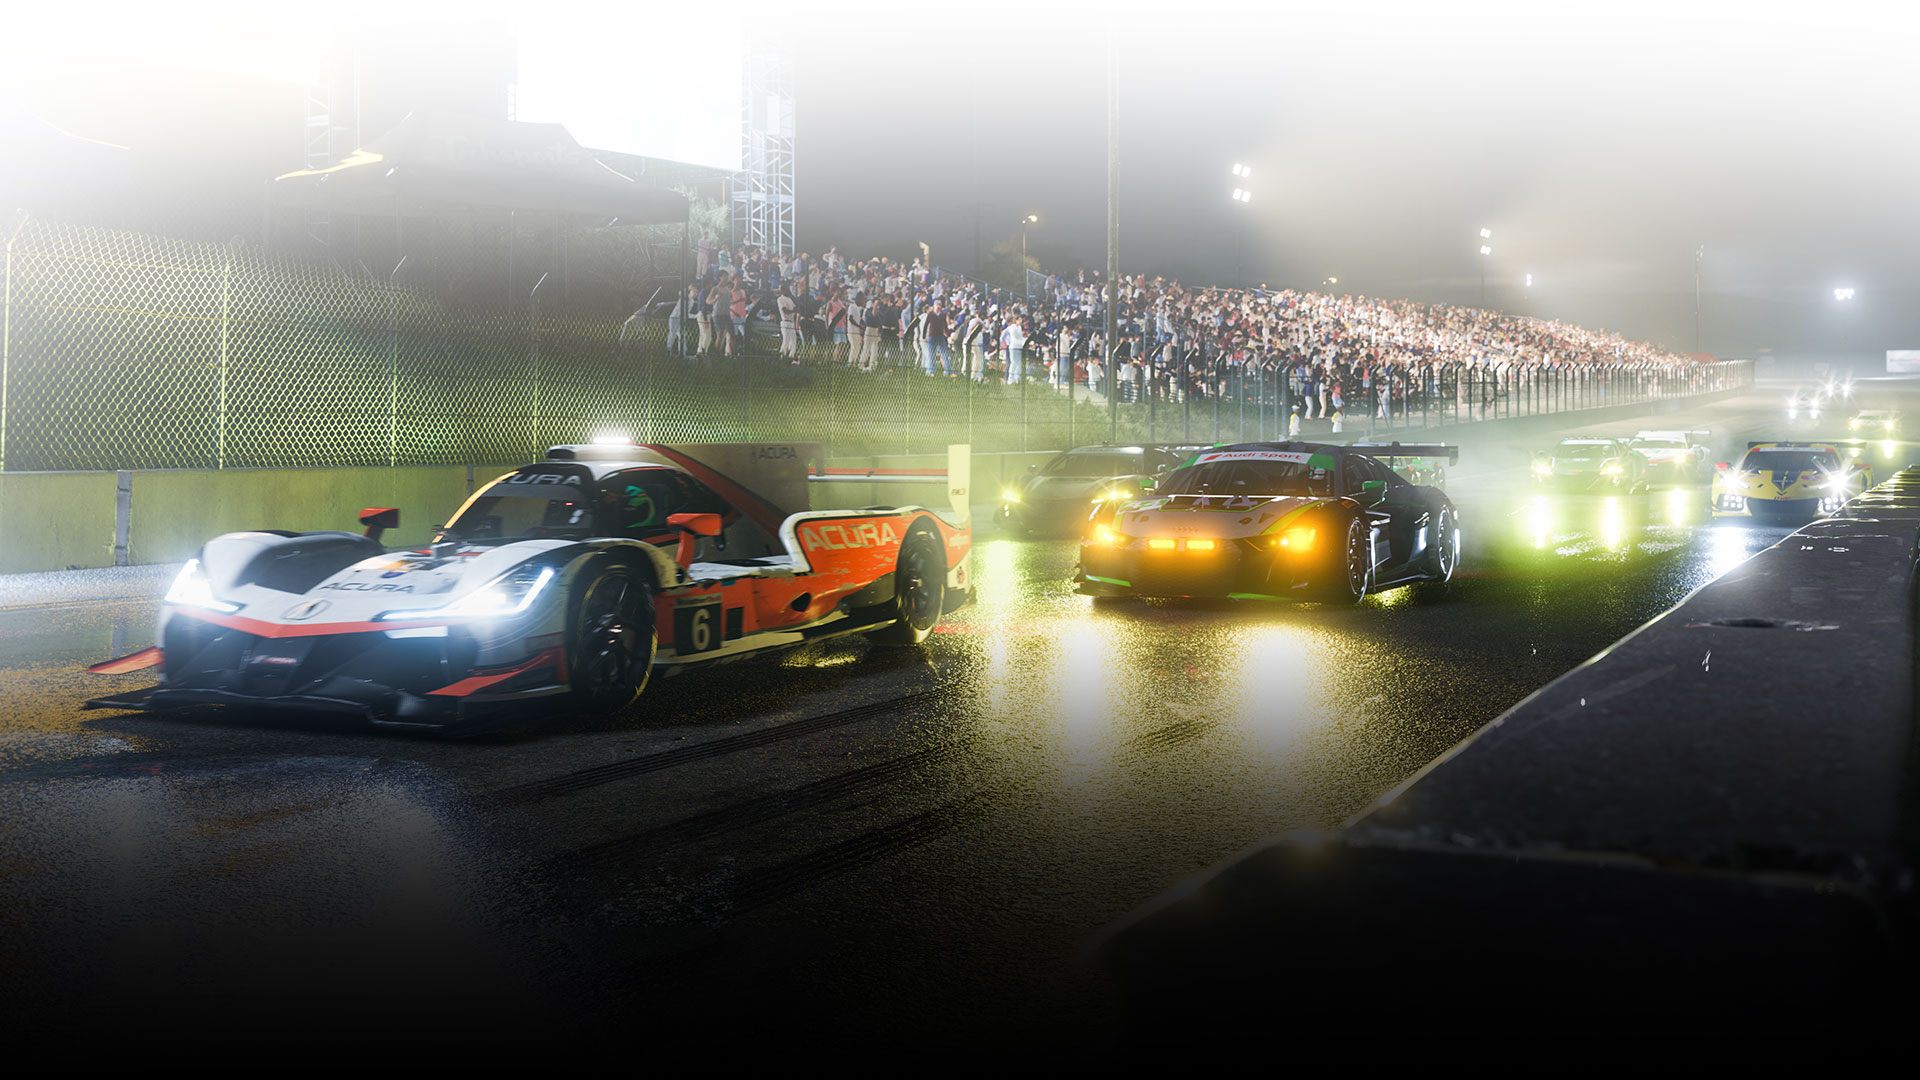 Carros de corrida alinhados numa pista molhada à noite.